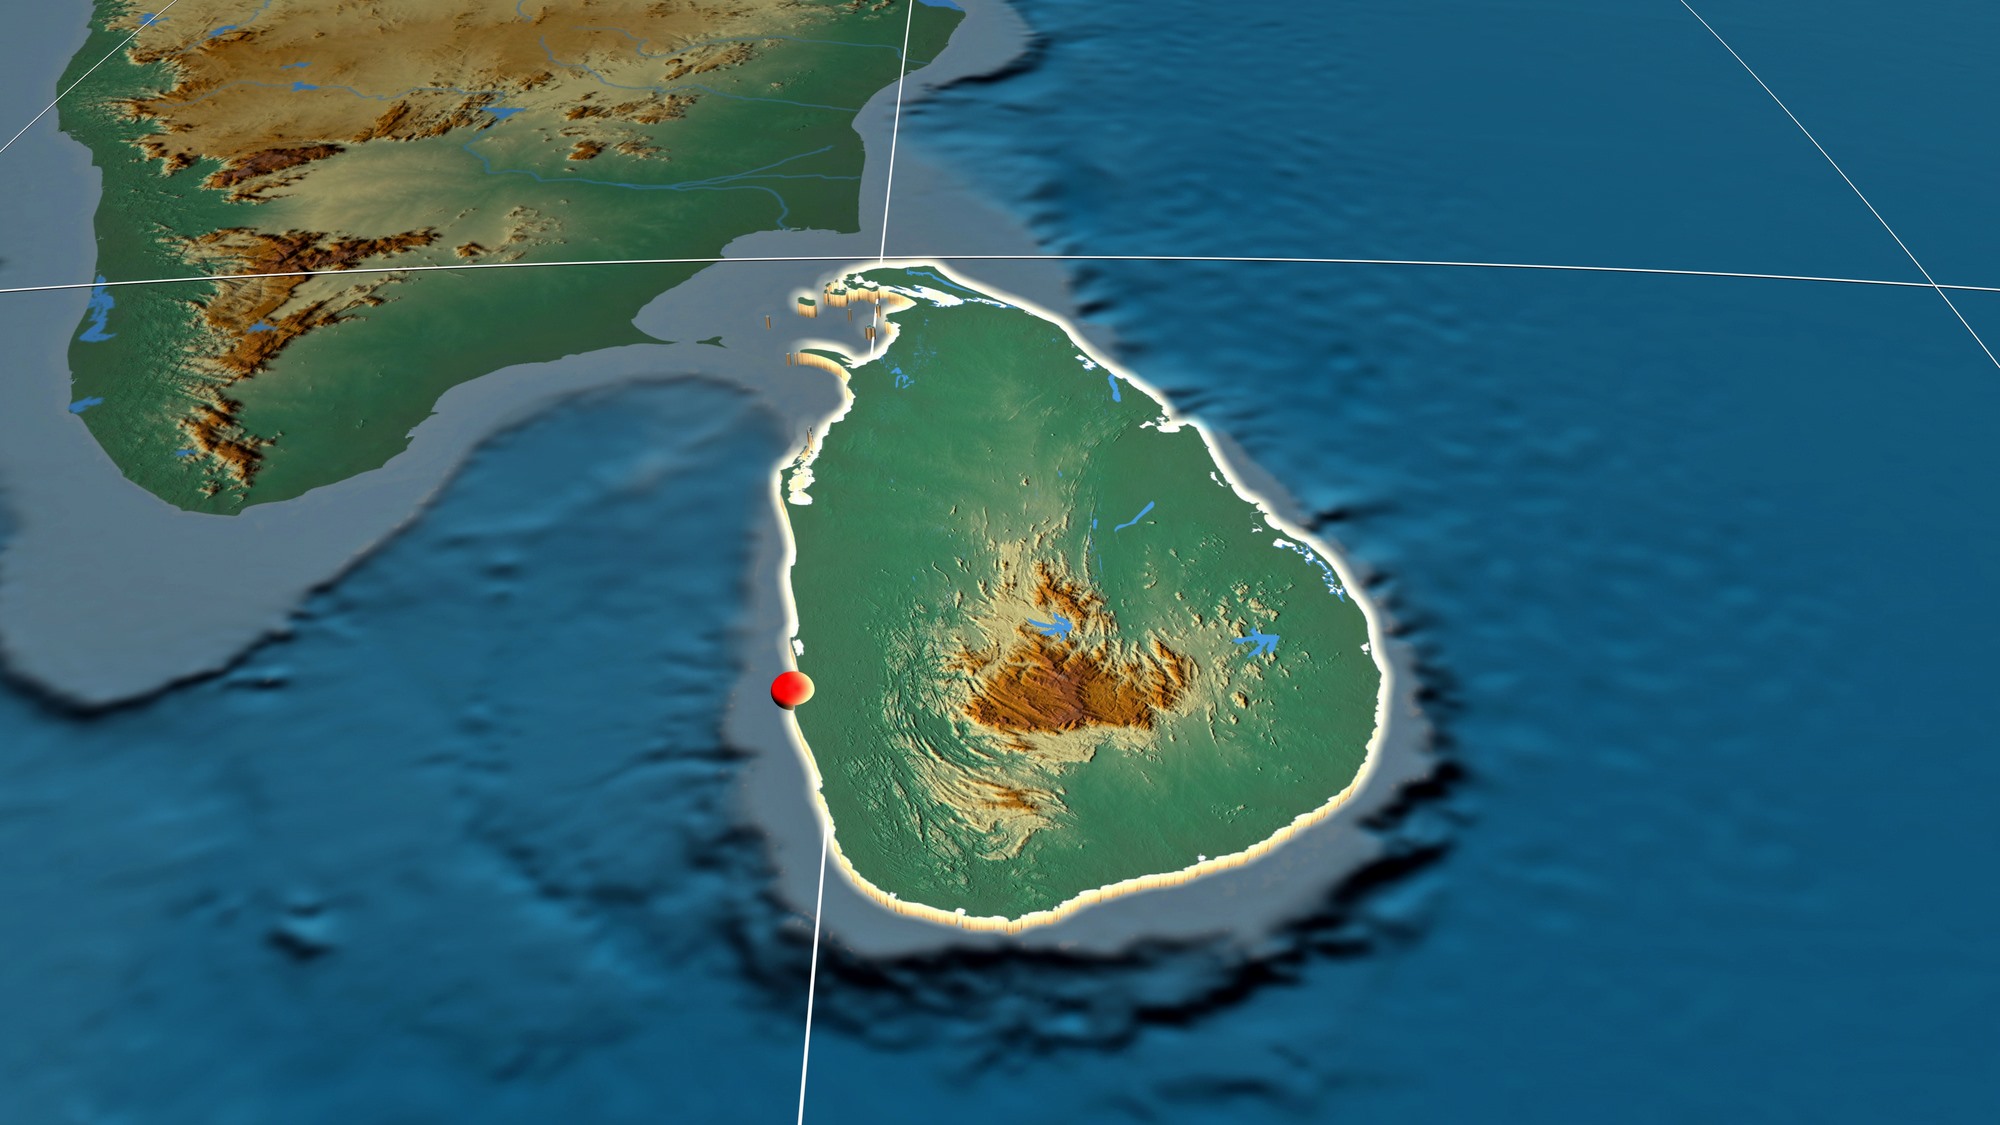 Шри ланка форма. Геология Шри Ланки. Карта рельефа Шри Ланки. Шри Ланка на карте рельеф. Рельеф острова Шри Ланка.